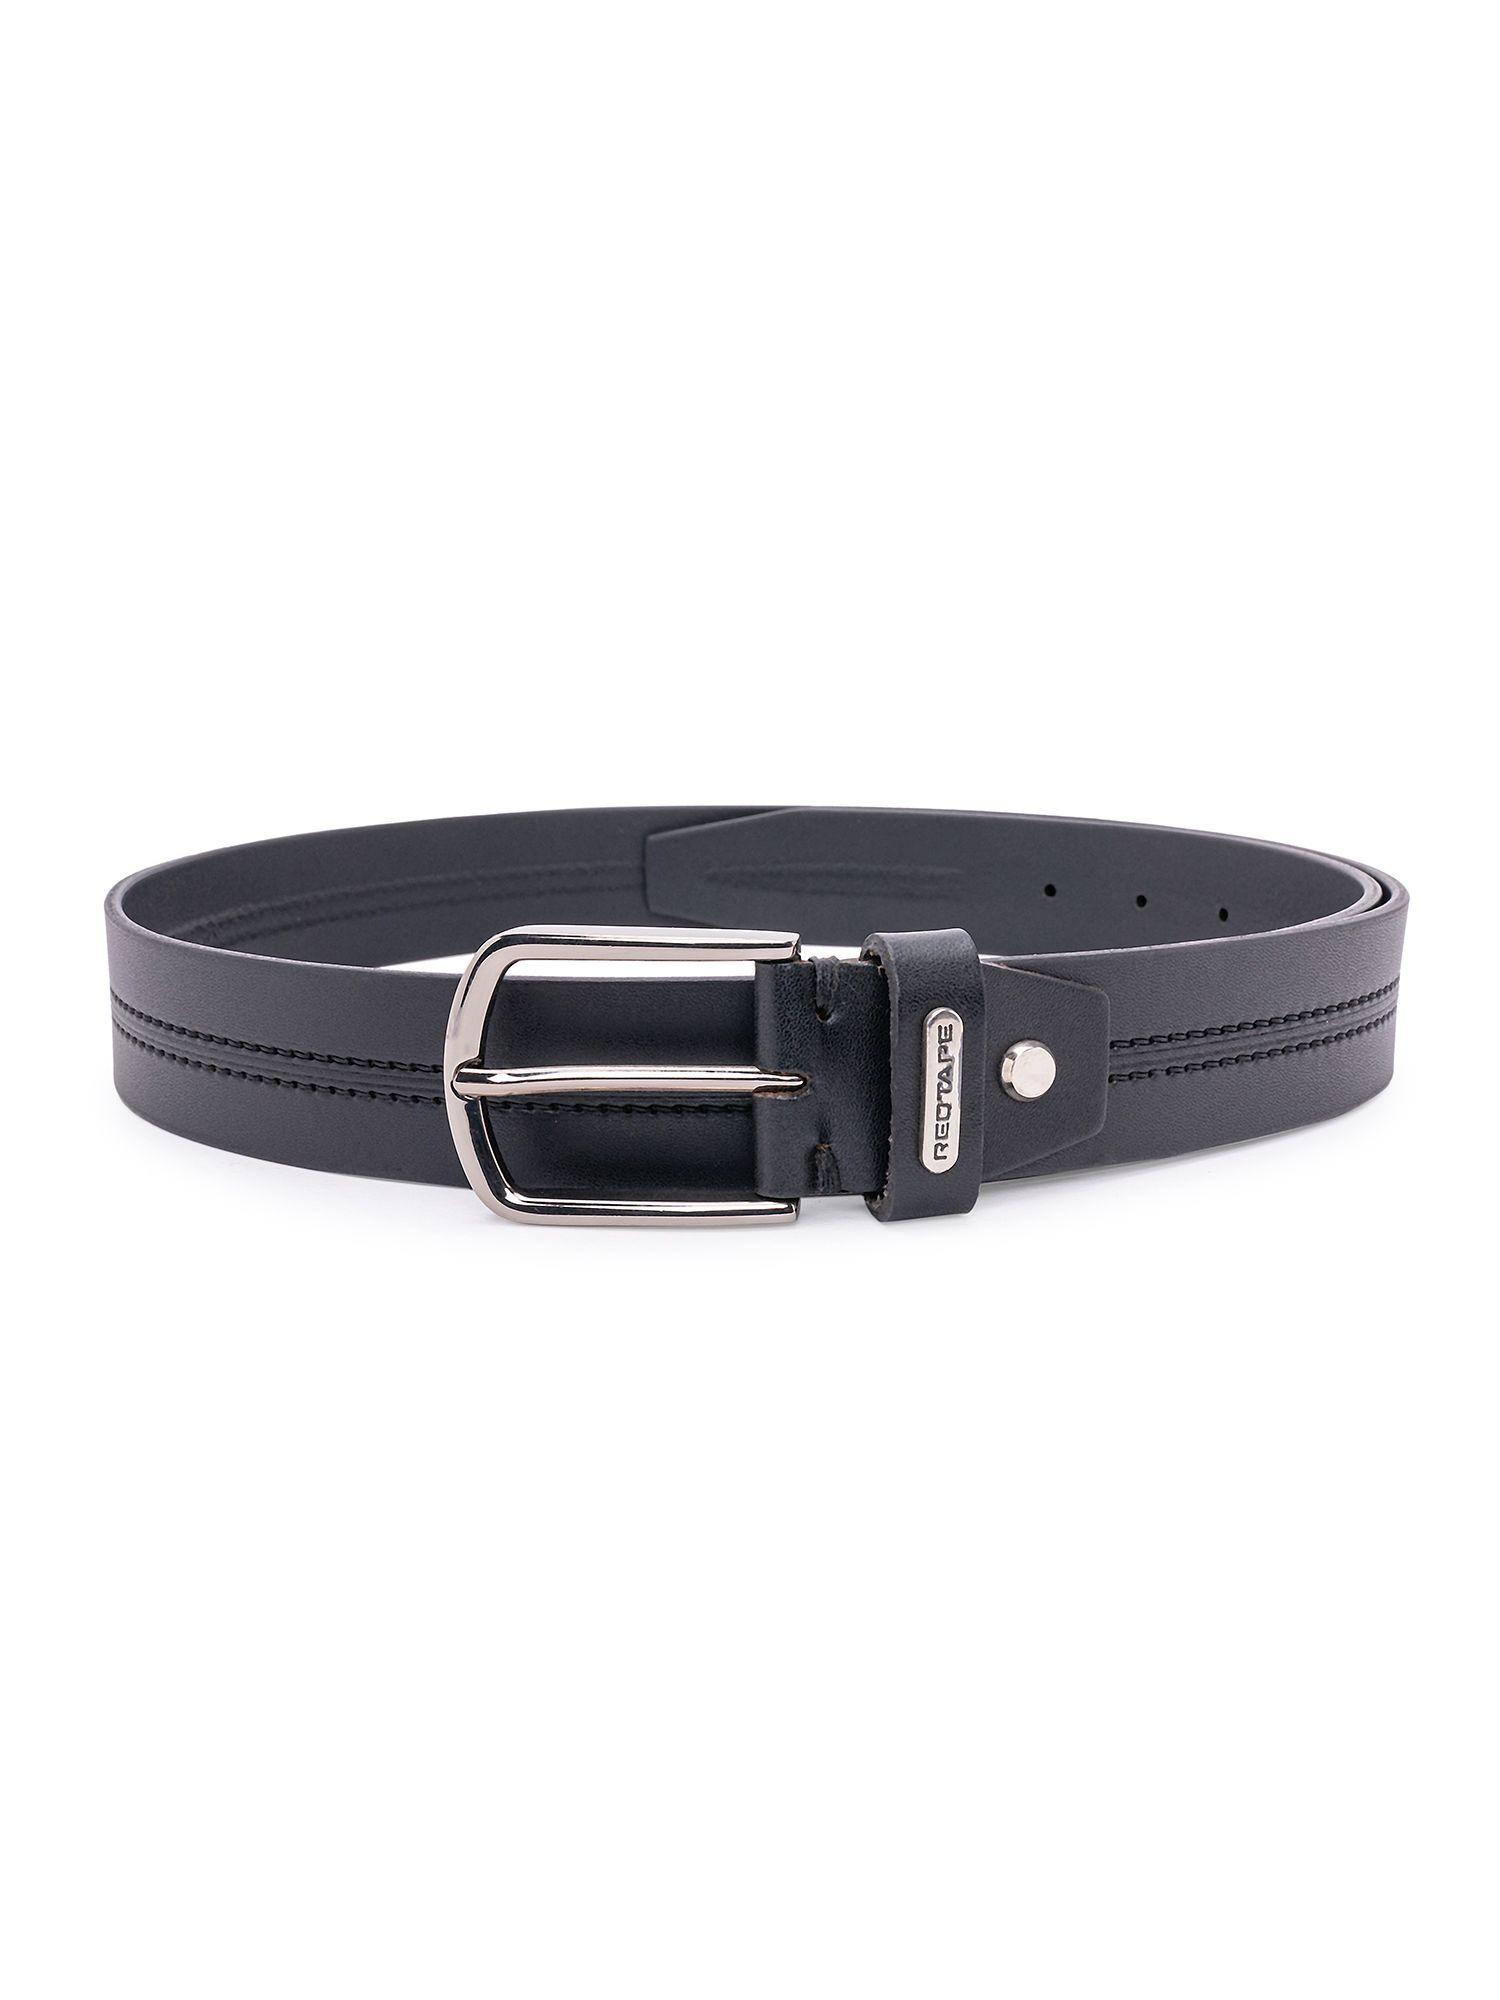 mens black leather formal belt